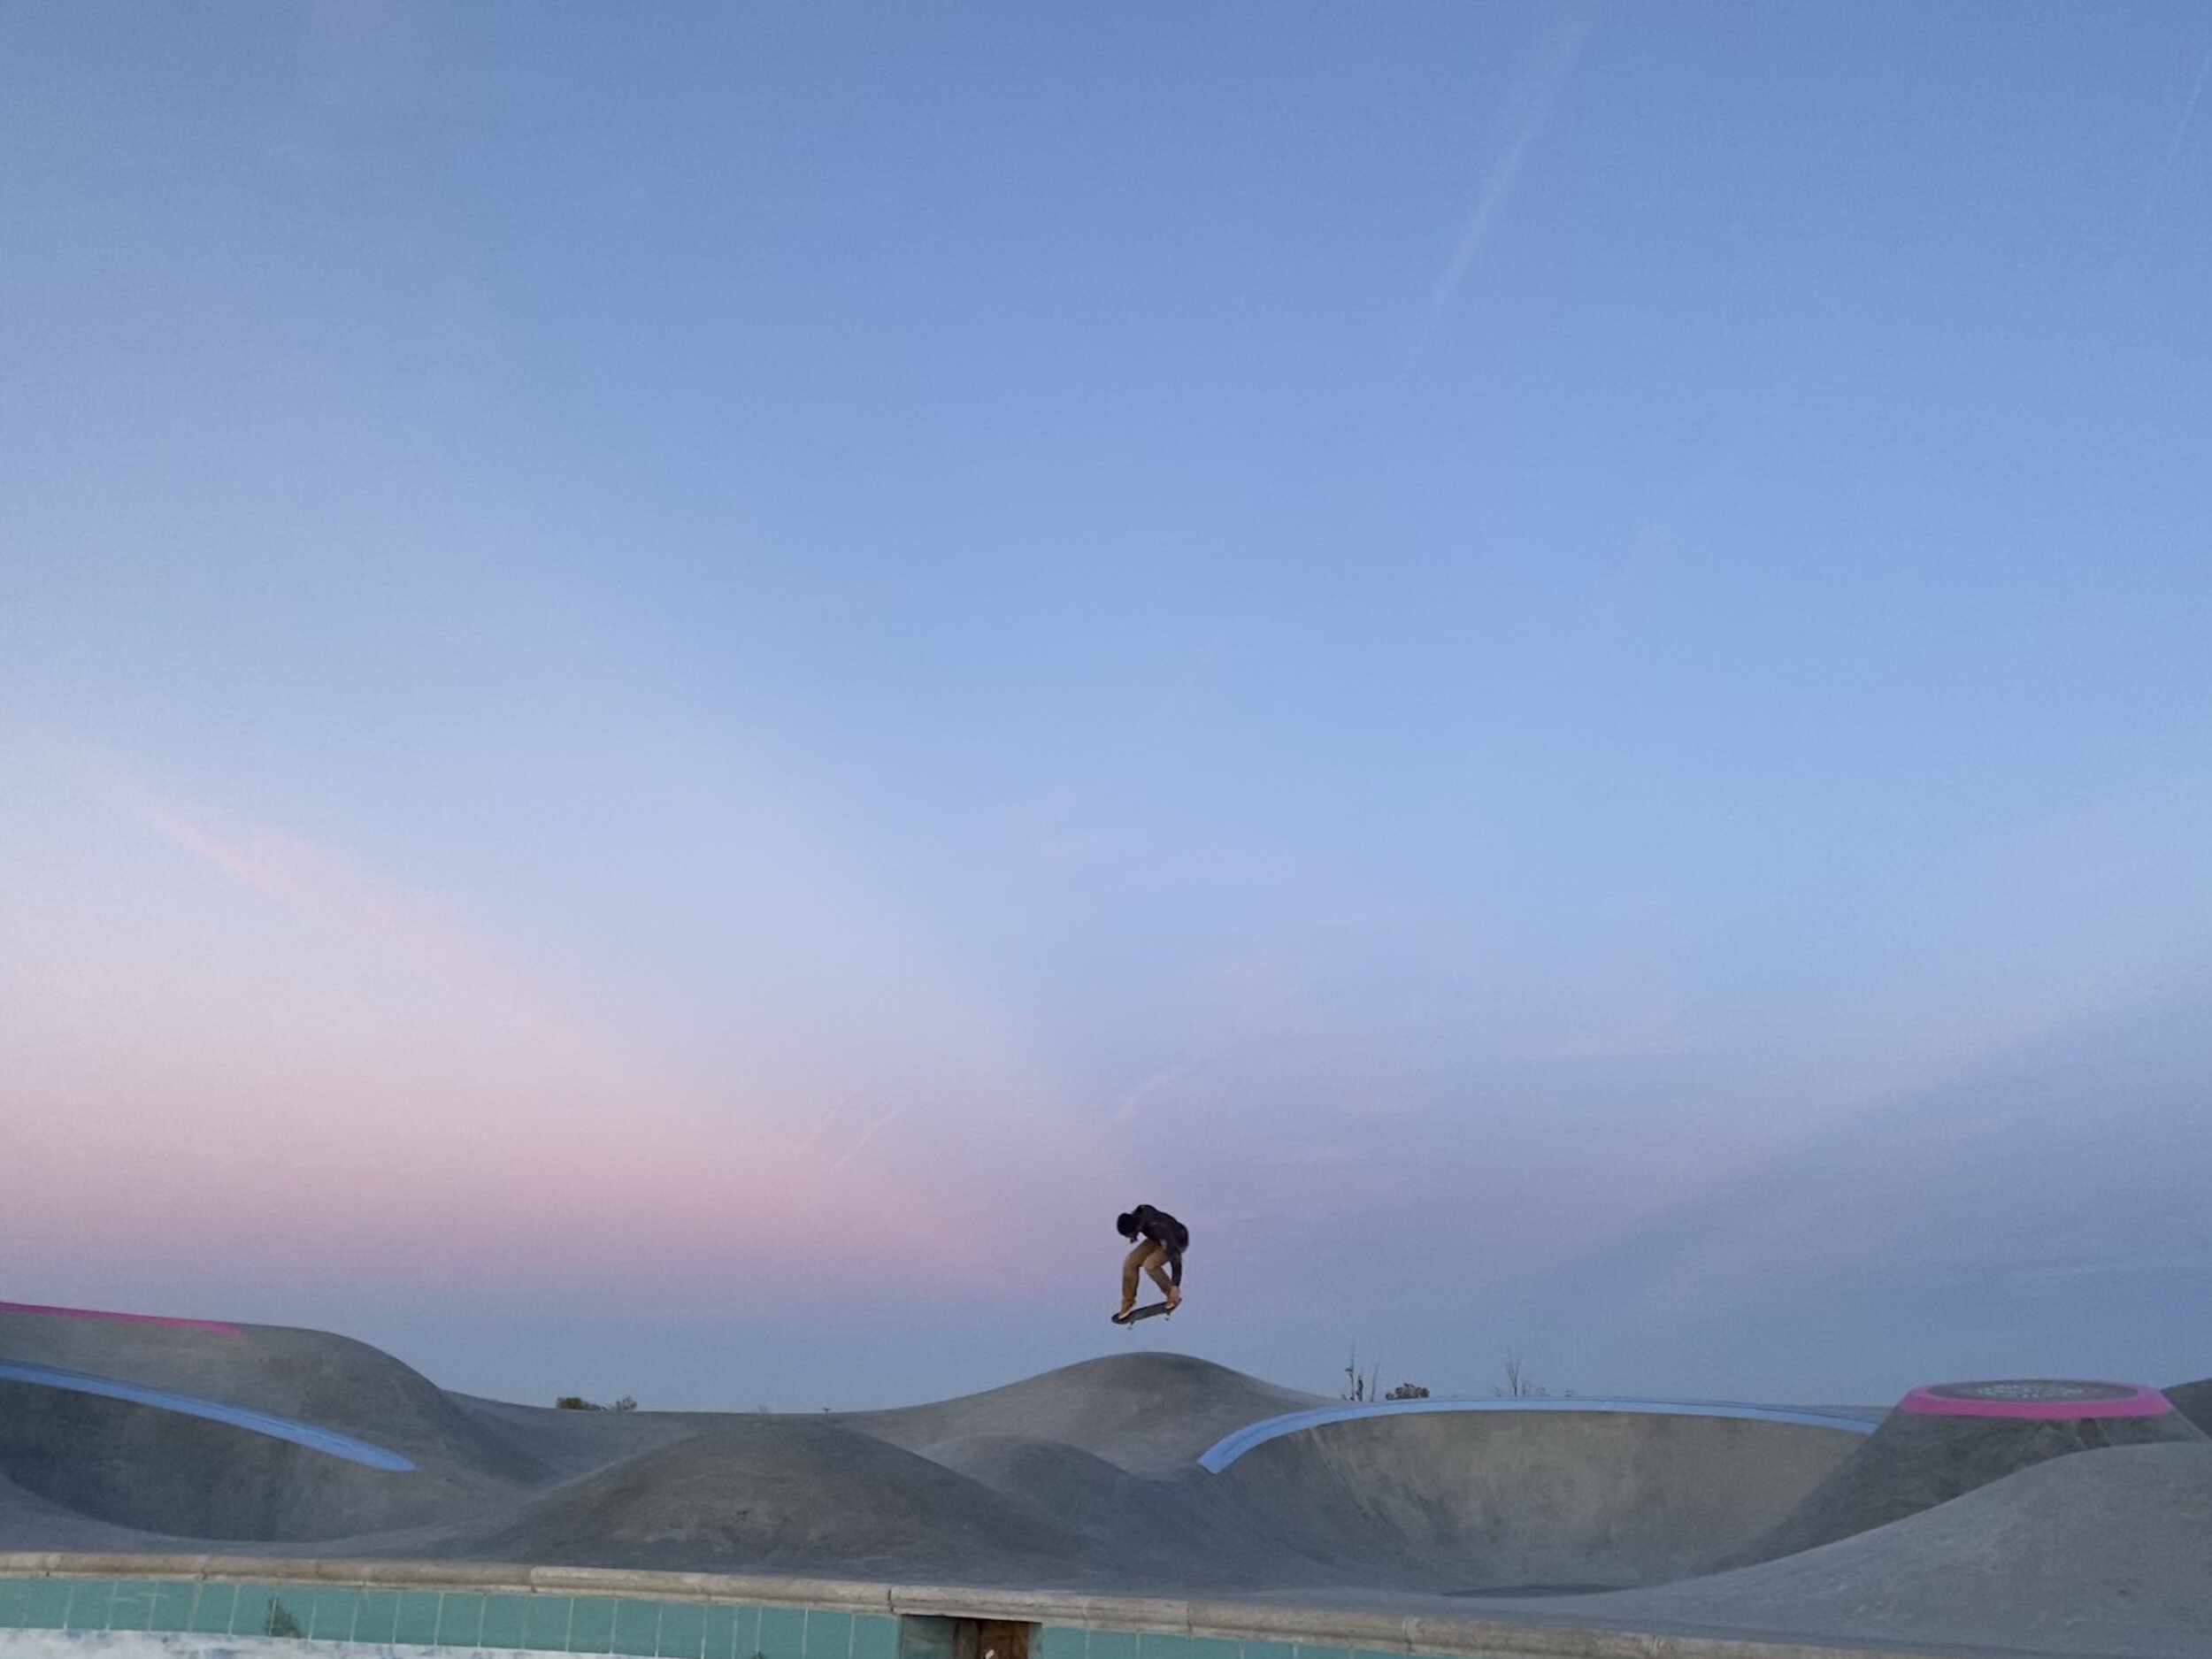 Float across that desert sky 🌔 @_dicks_pix